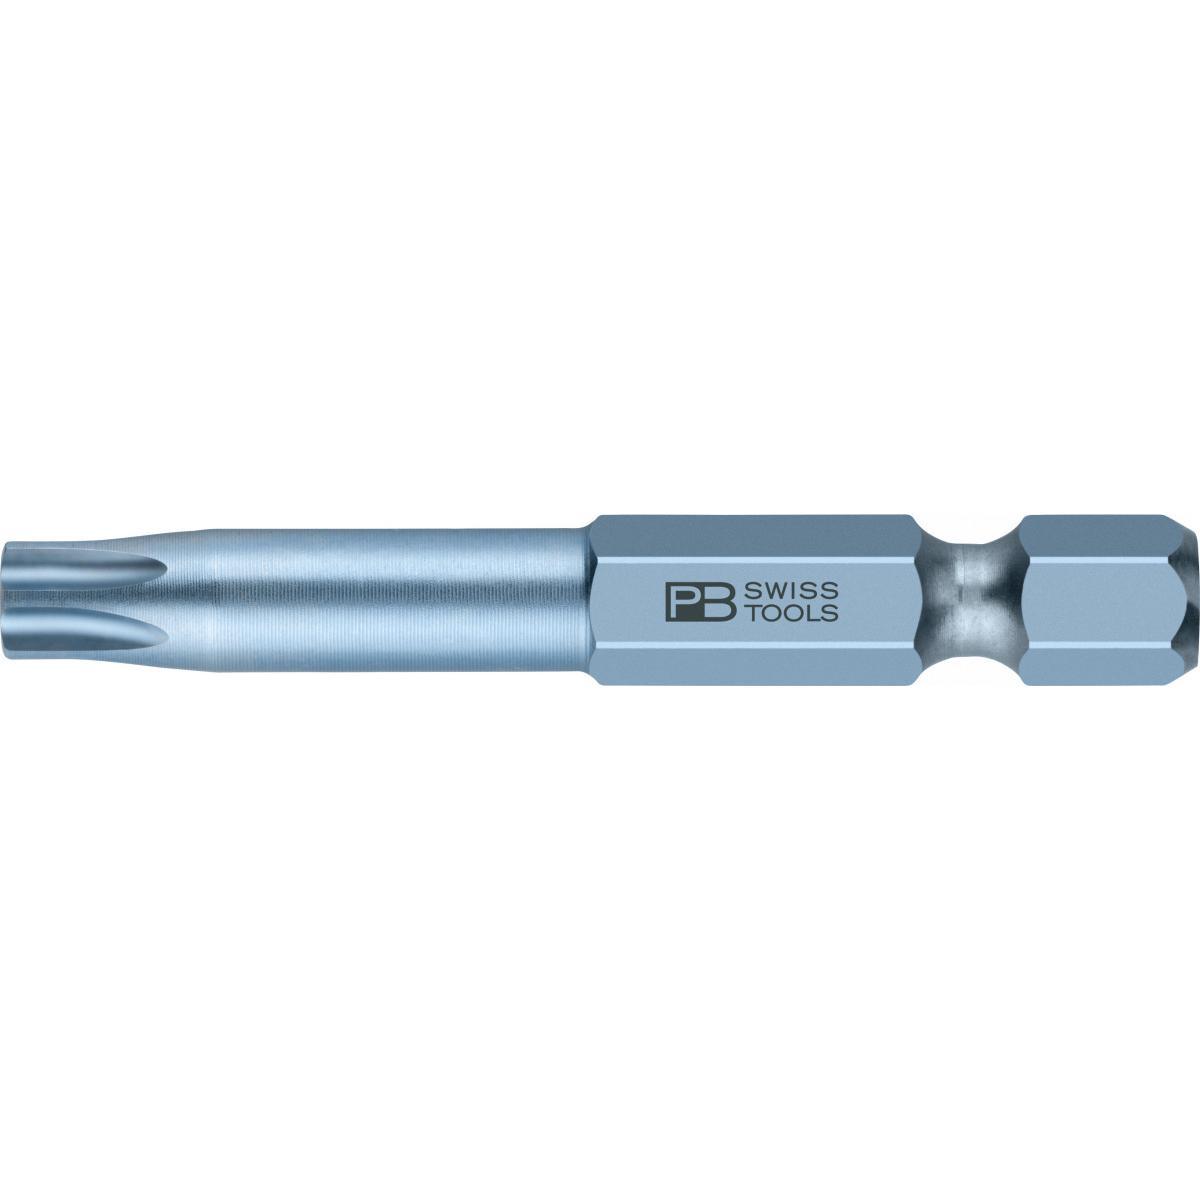 Đầu Bits Hoa Thị Torx T30 Dài 50mm Pb Swiss Tools Pb E6,400/30-50 - Hàng Chính Hãng 100% từ Thụy Sĩ